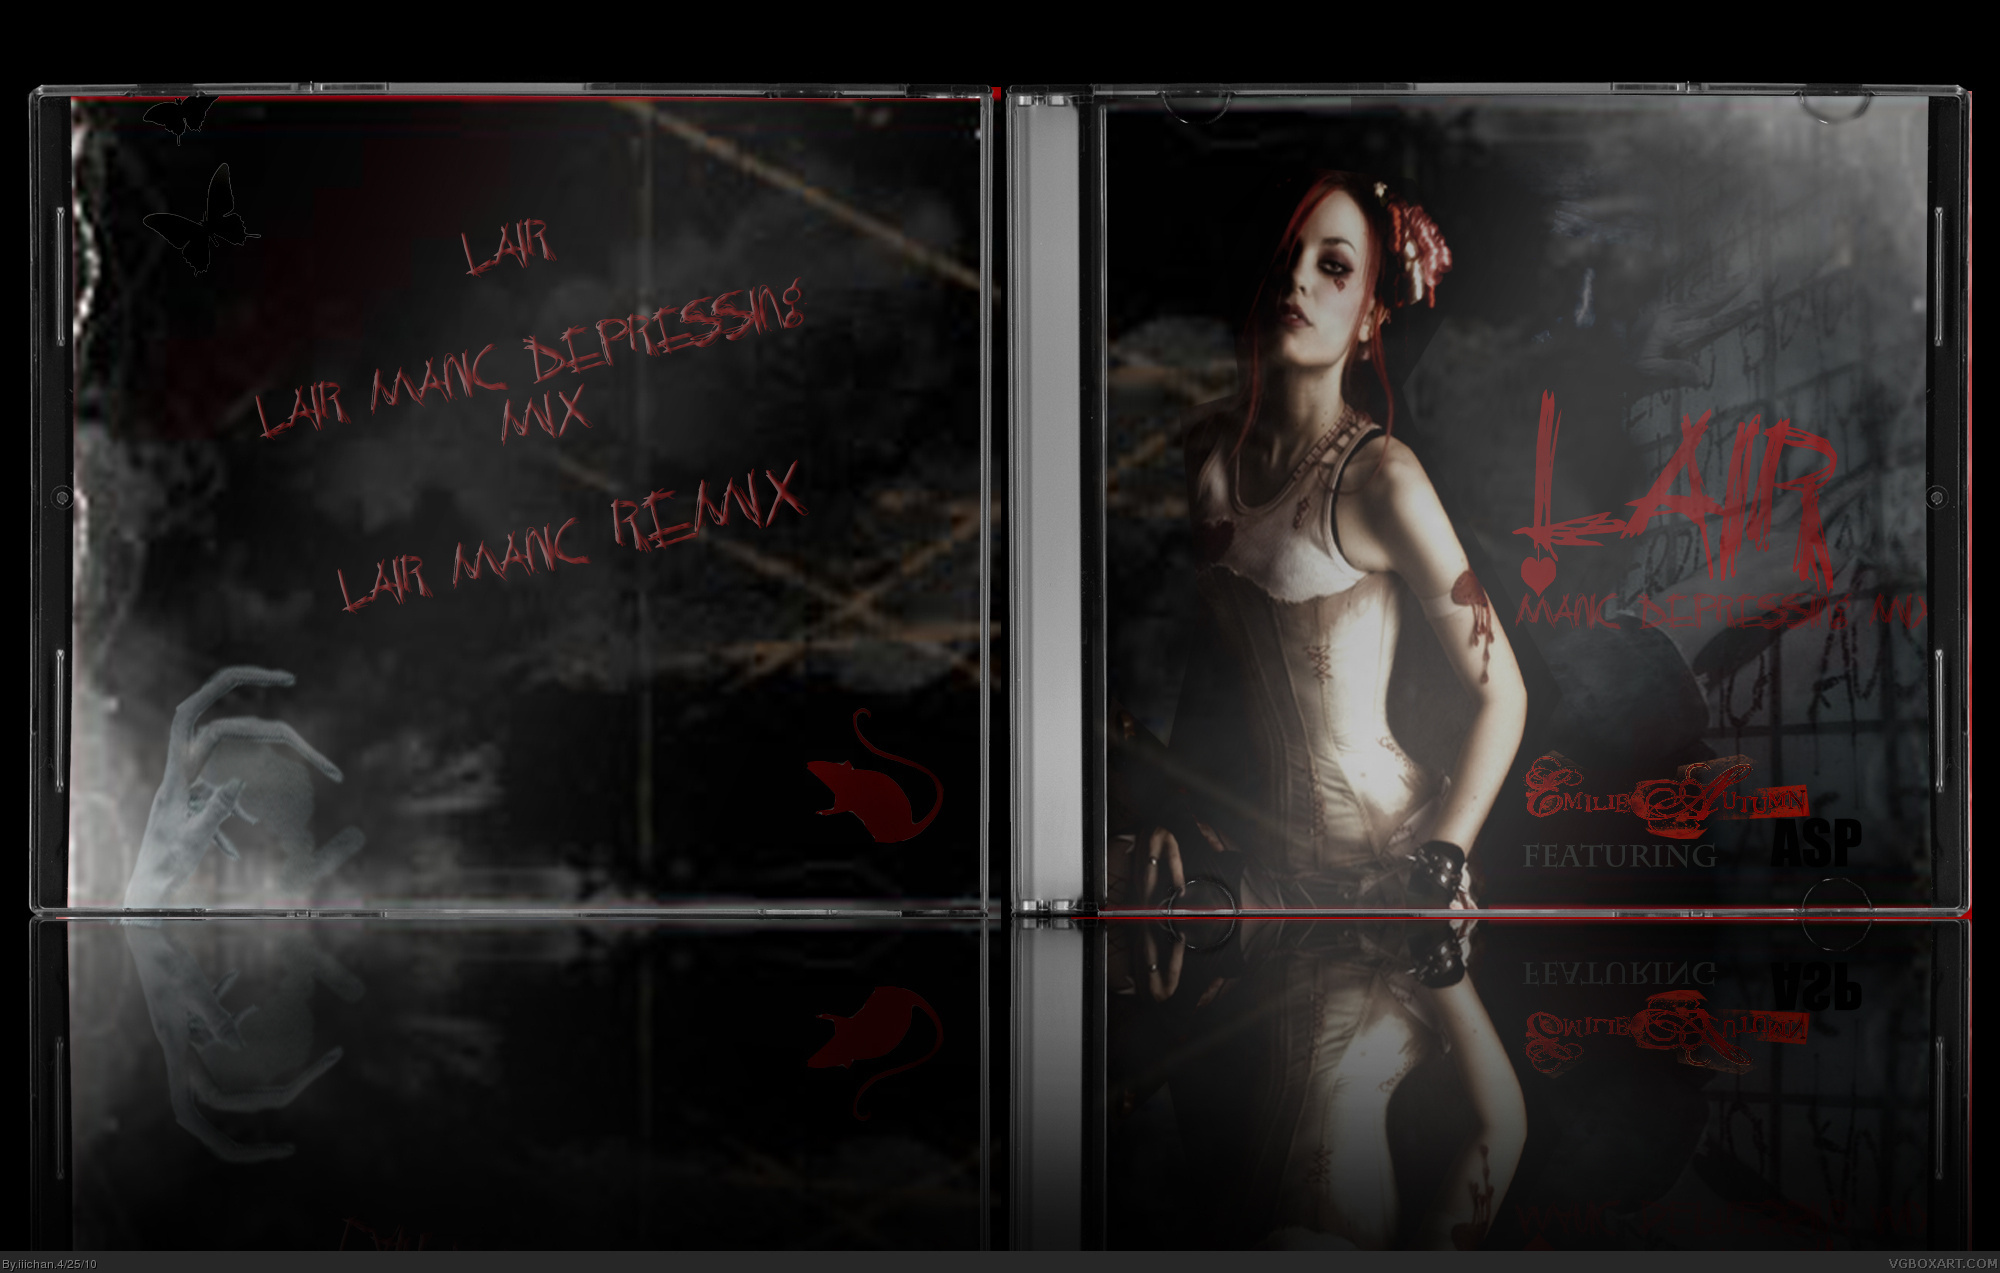 Emilie Autumn feat. Asp - Lair box cover